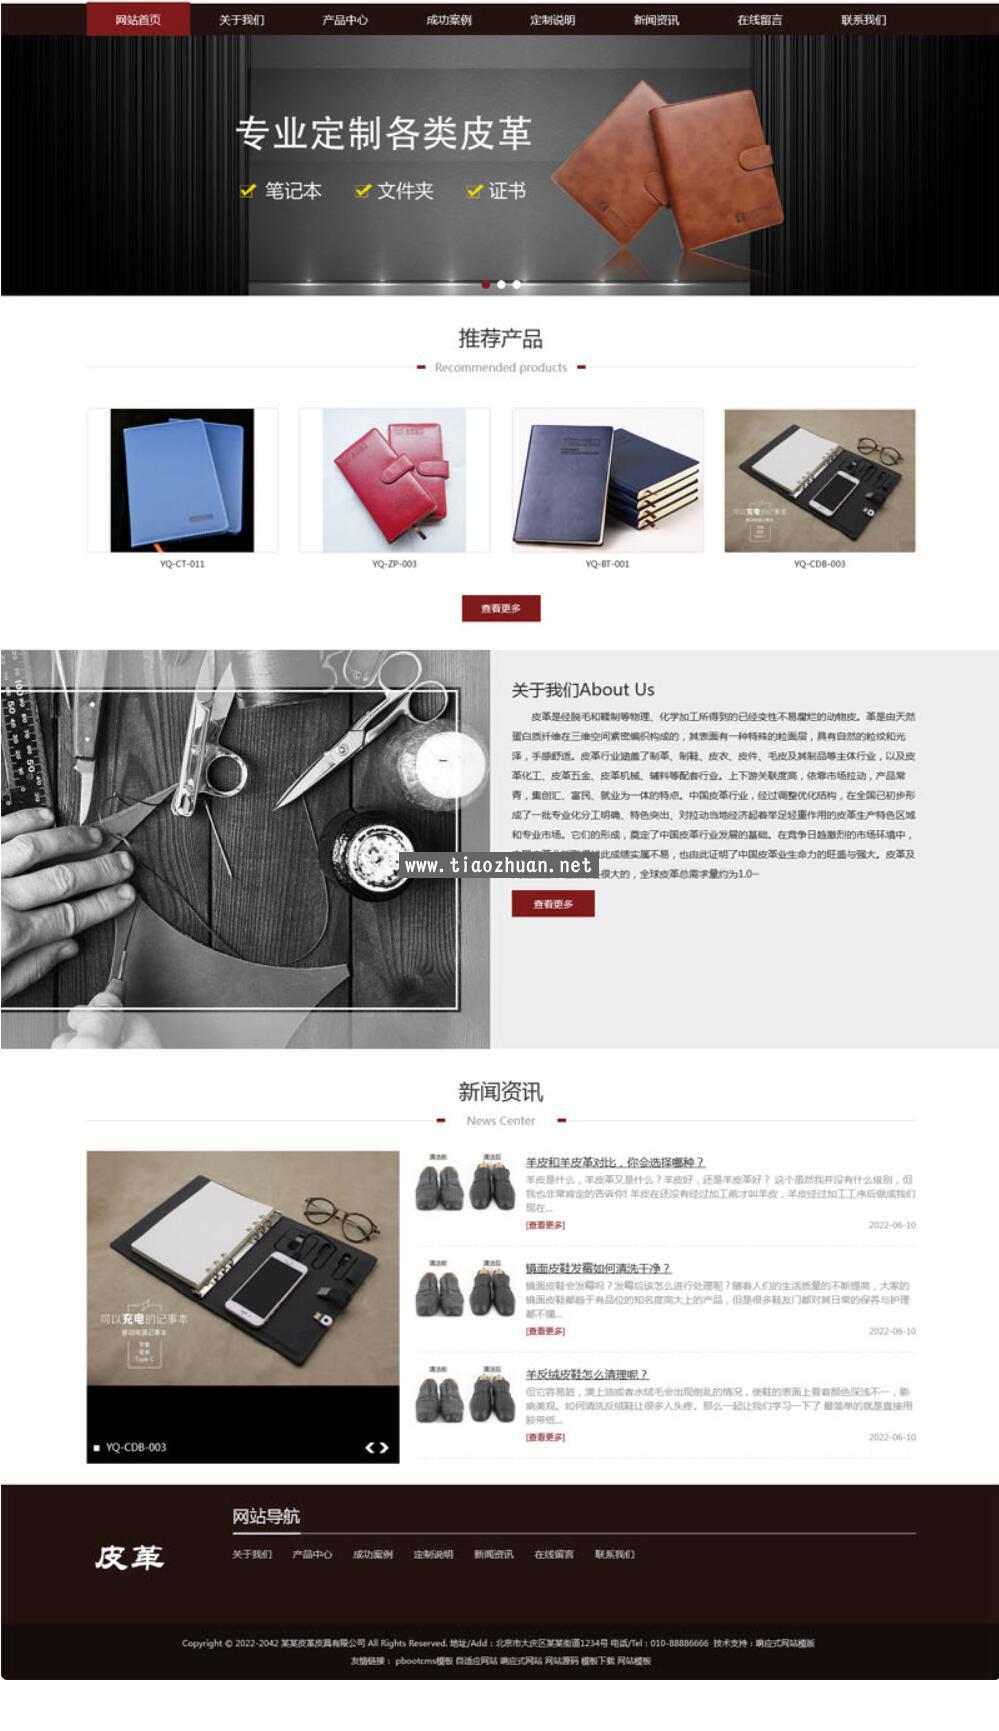 皮革皮具pbootcms网站模板,纺织皮具皮革展示型企业网站源码下载